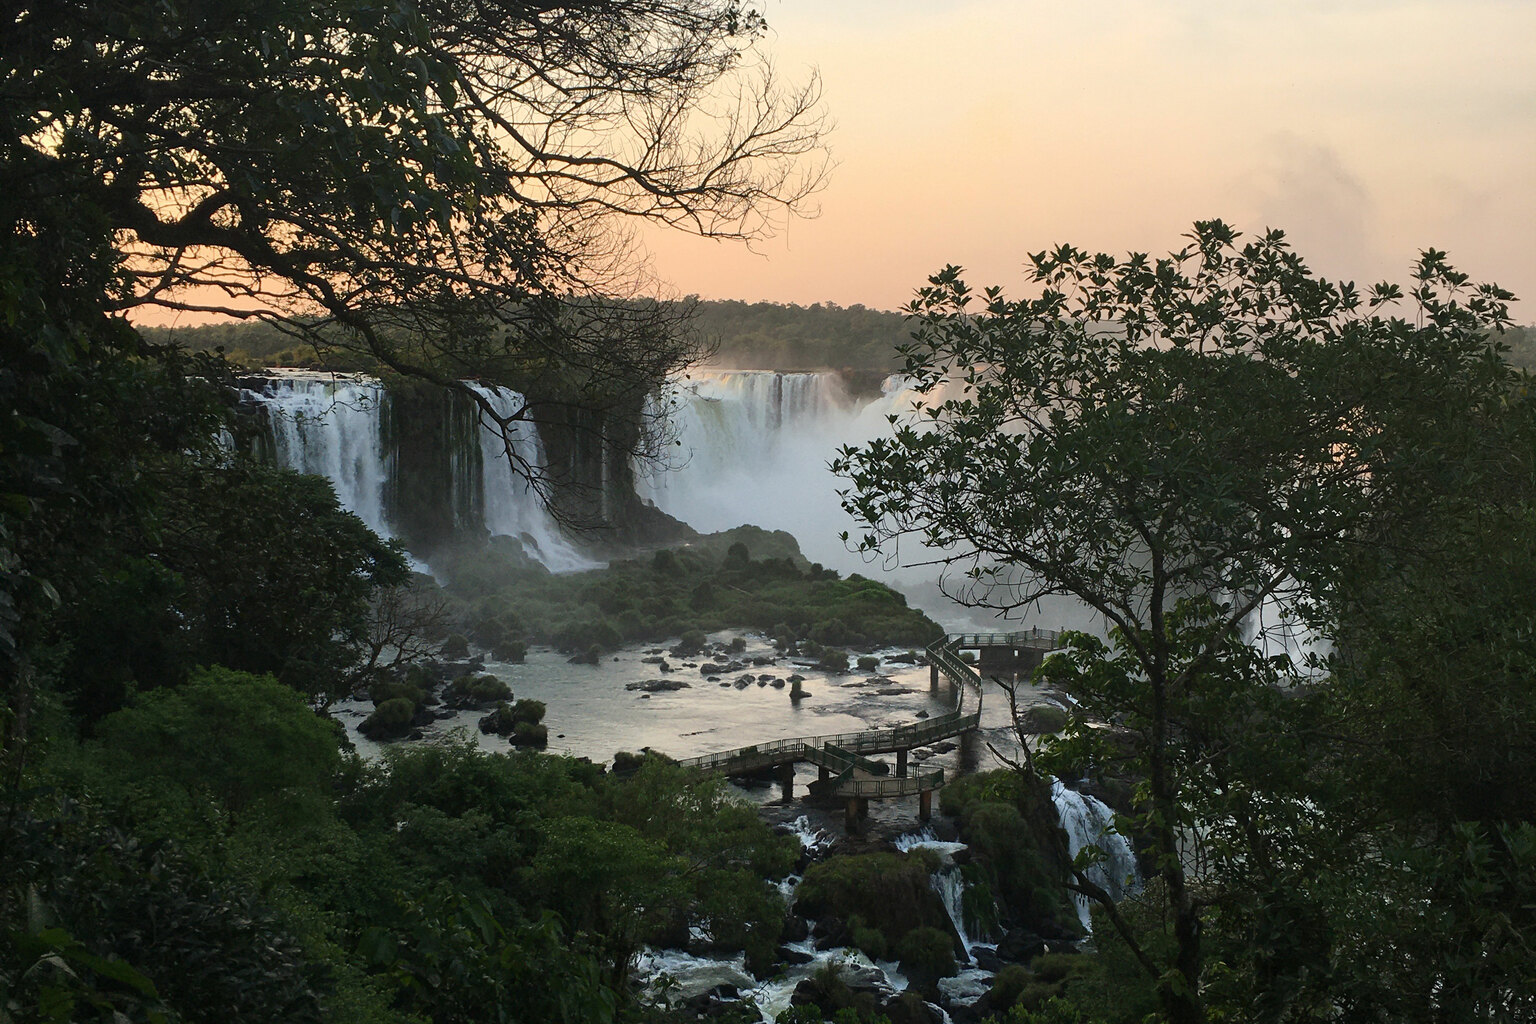 Iguaçu Falls, Brazil – venues with a view